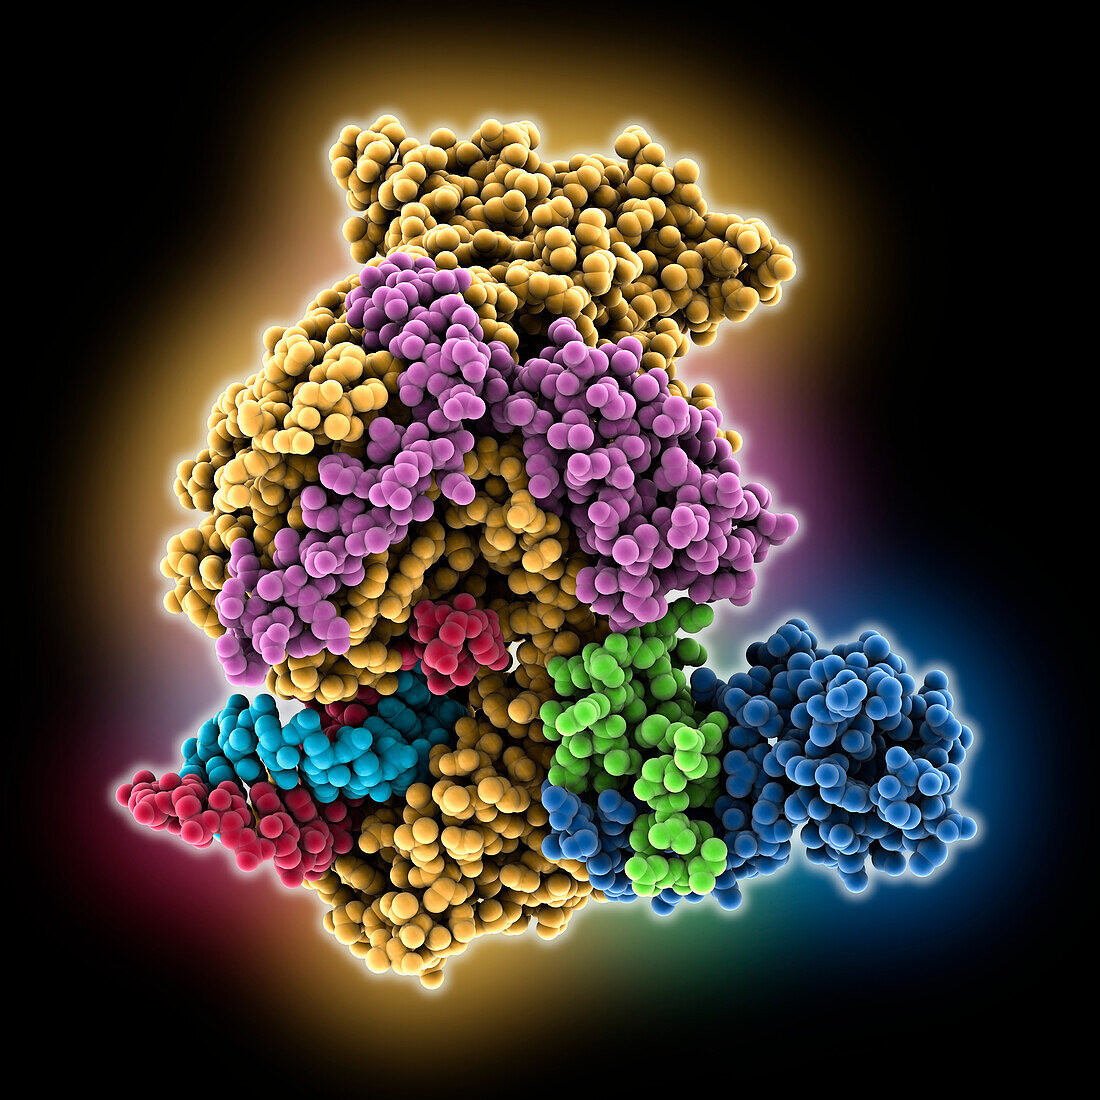 Covid-19 RNA-dependent RNA polymerase, molecular model